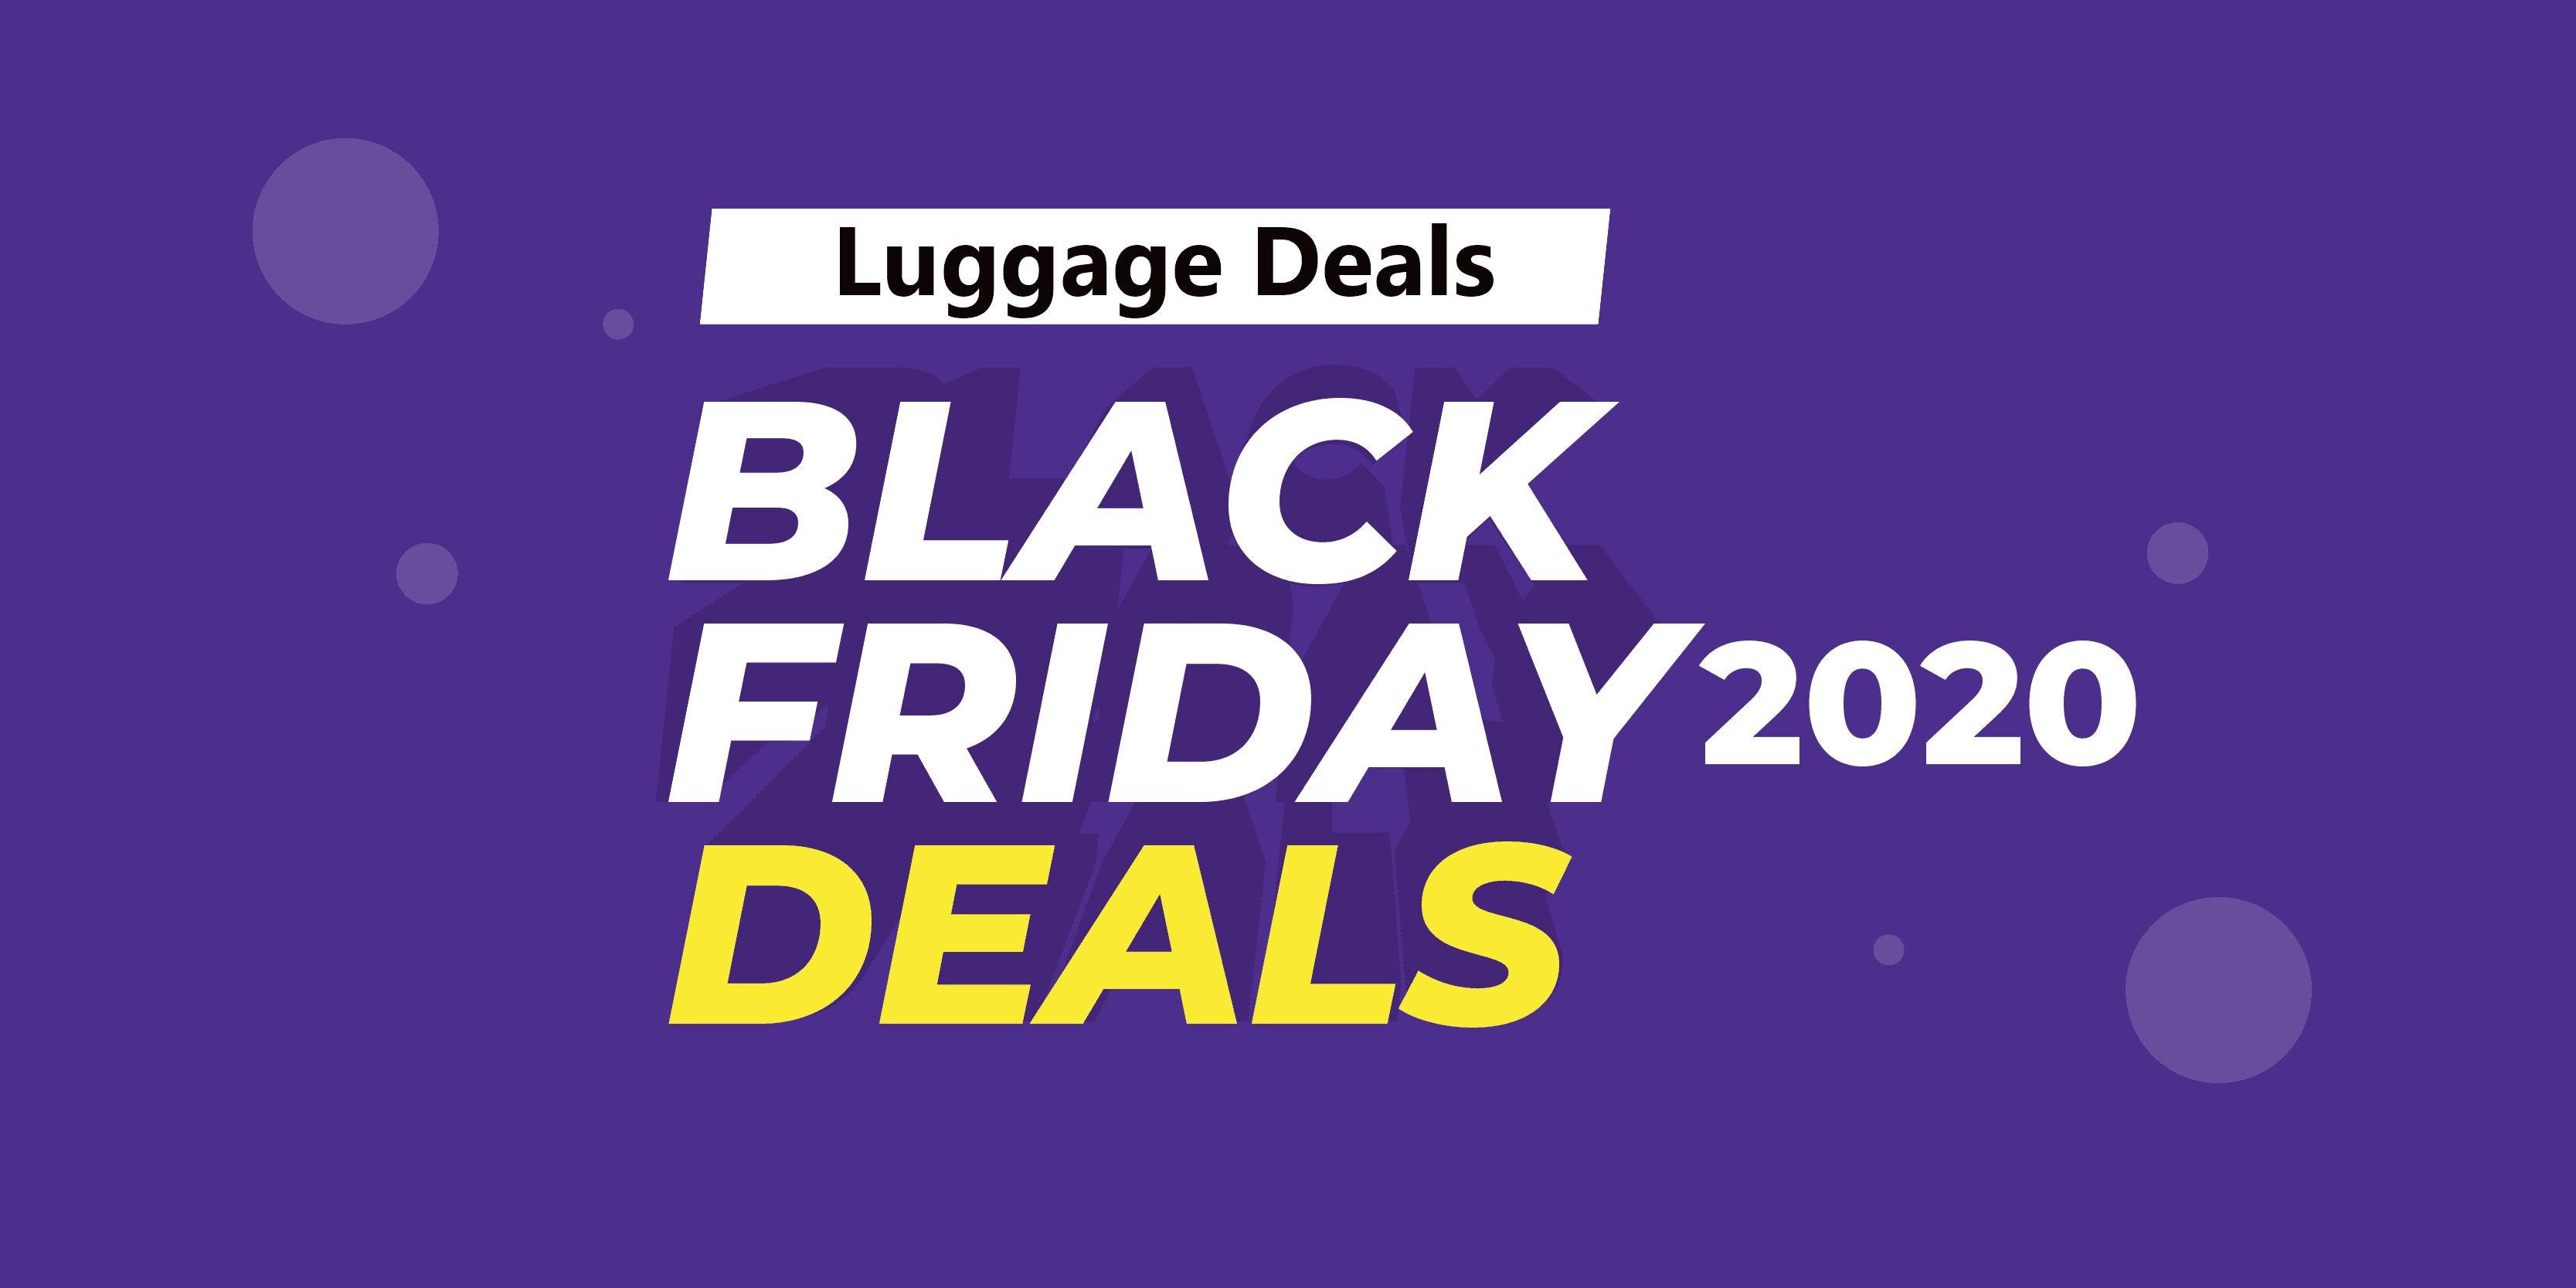 Luggage Black Friday Deals(2020) On Amazon